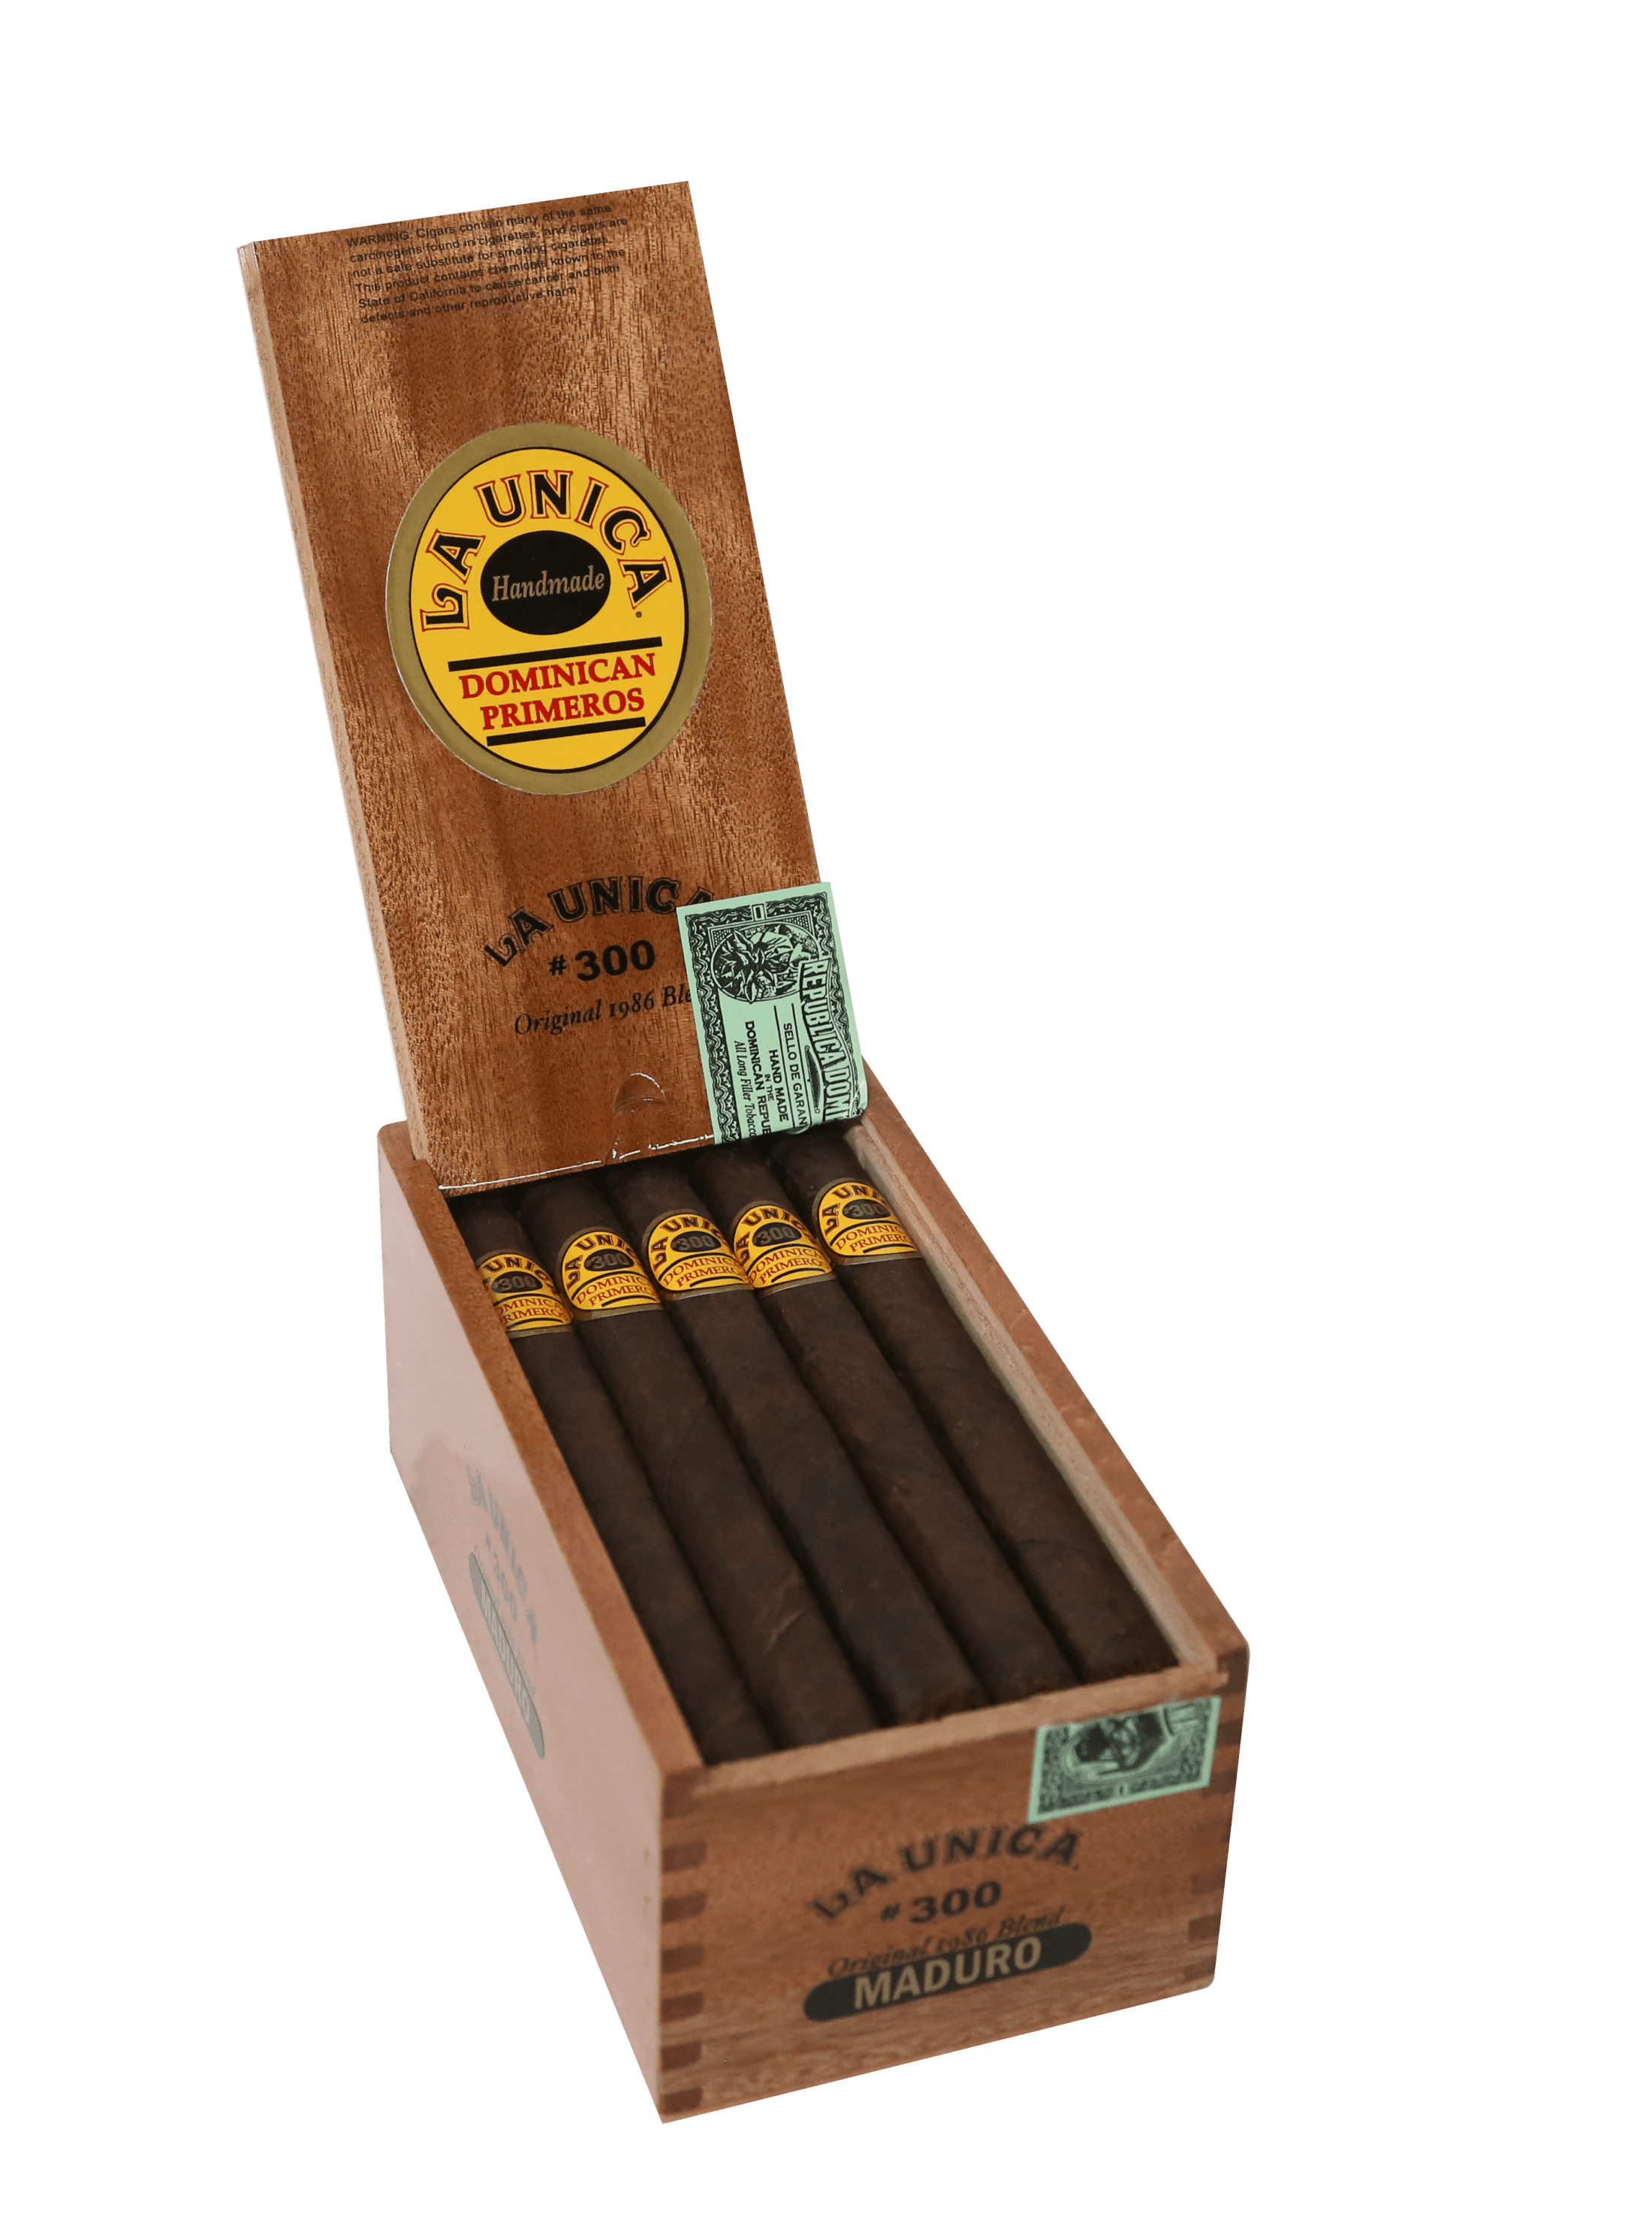 Open box of 20 count La Unica No. 300 Maduro cigars